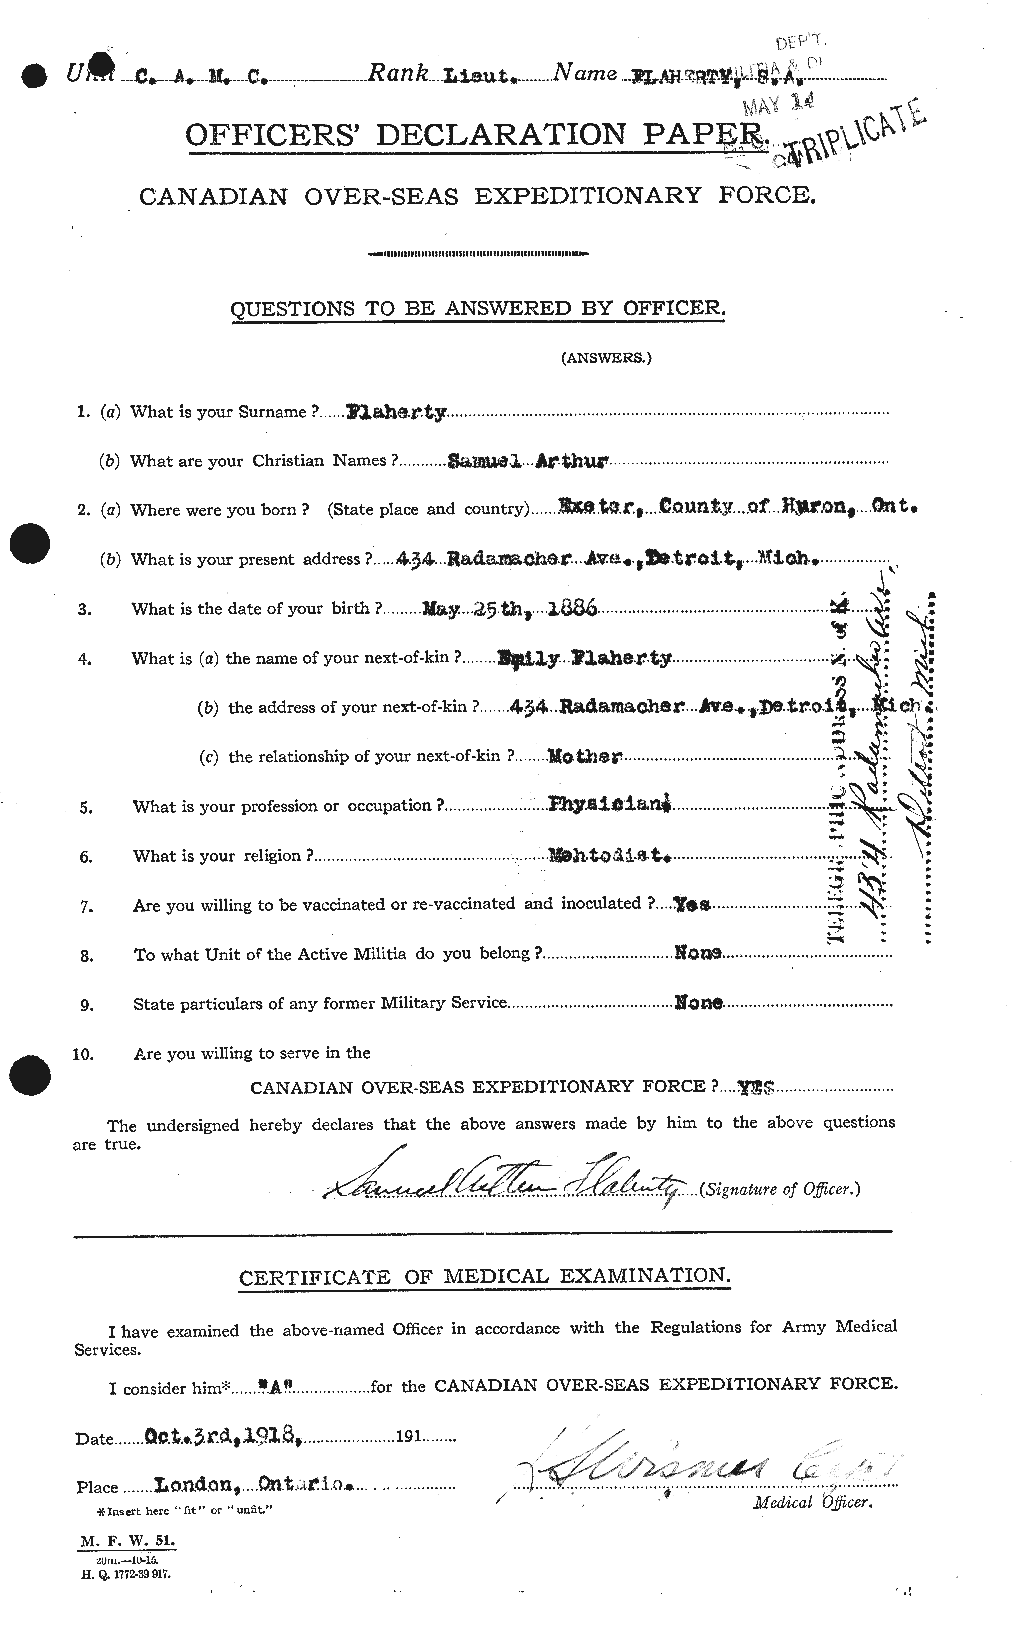 Dossiers du Personnel de la Première Guerre mondiale - CEC 323380a